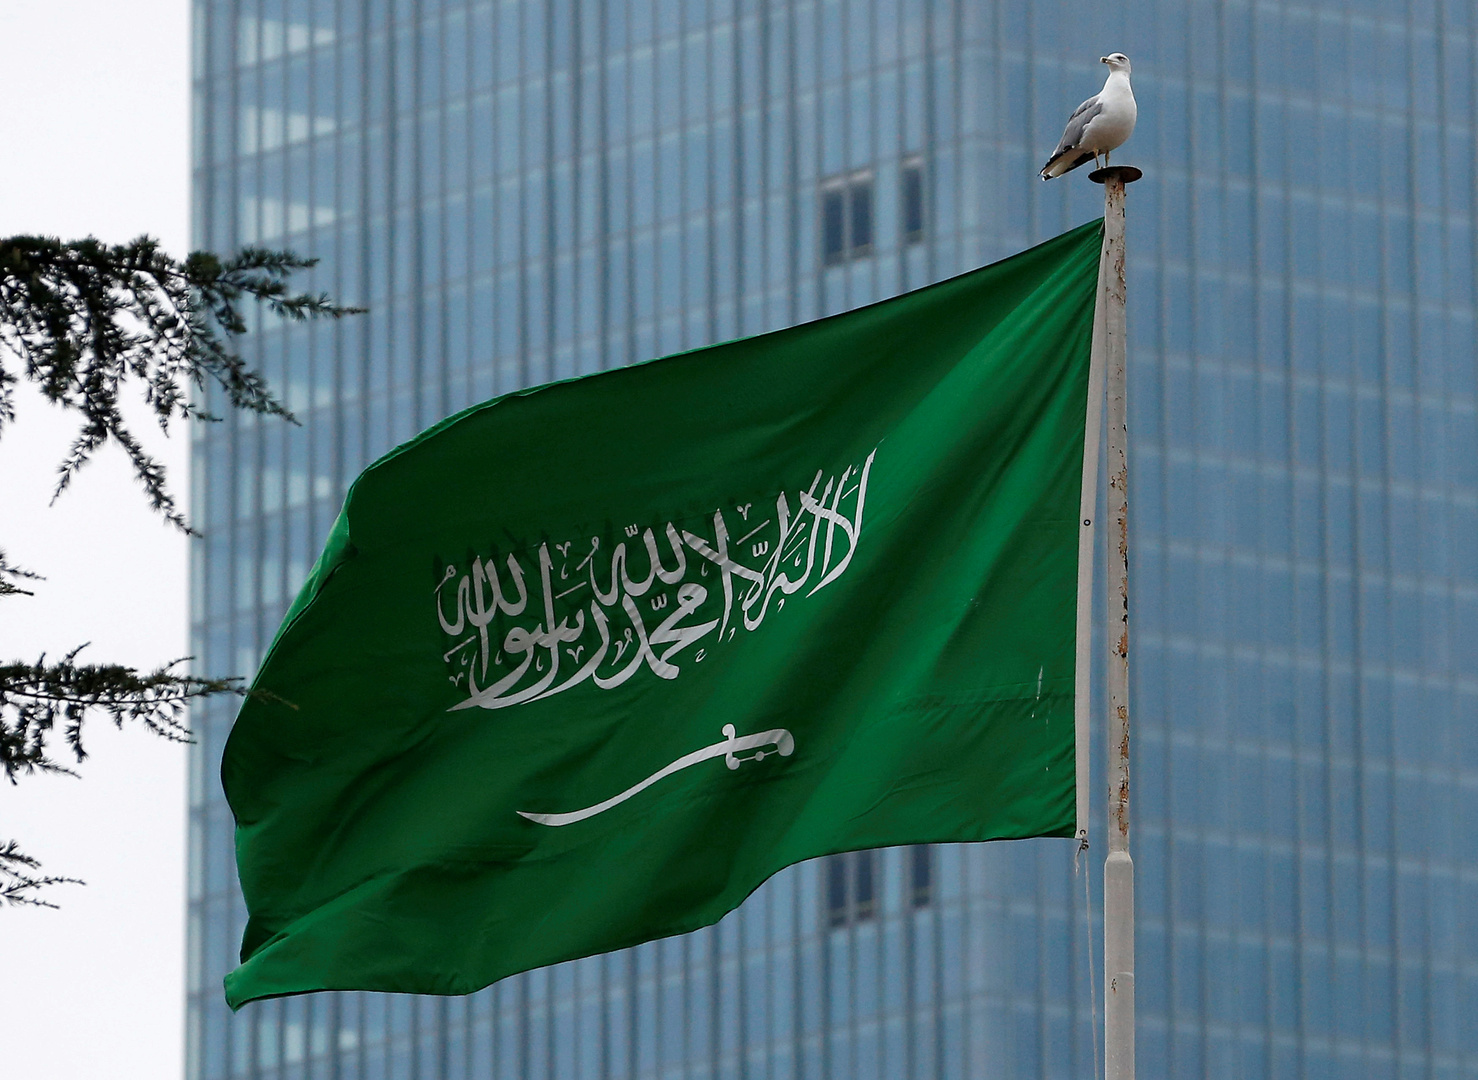 السعودية تعلن استعدادها للتطبيع مع إسرائيل شرط تنفيذ مبادرة السلام التي طرحتها الرياض عام 2002